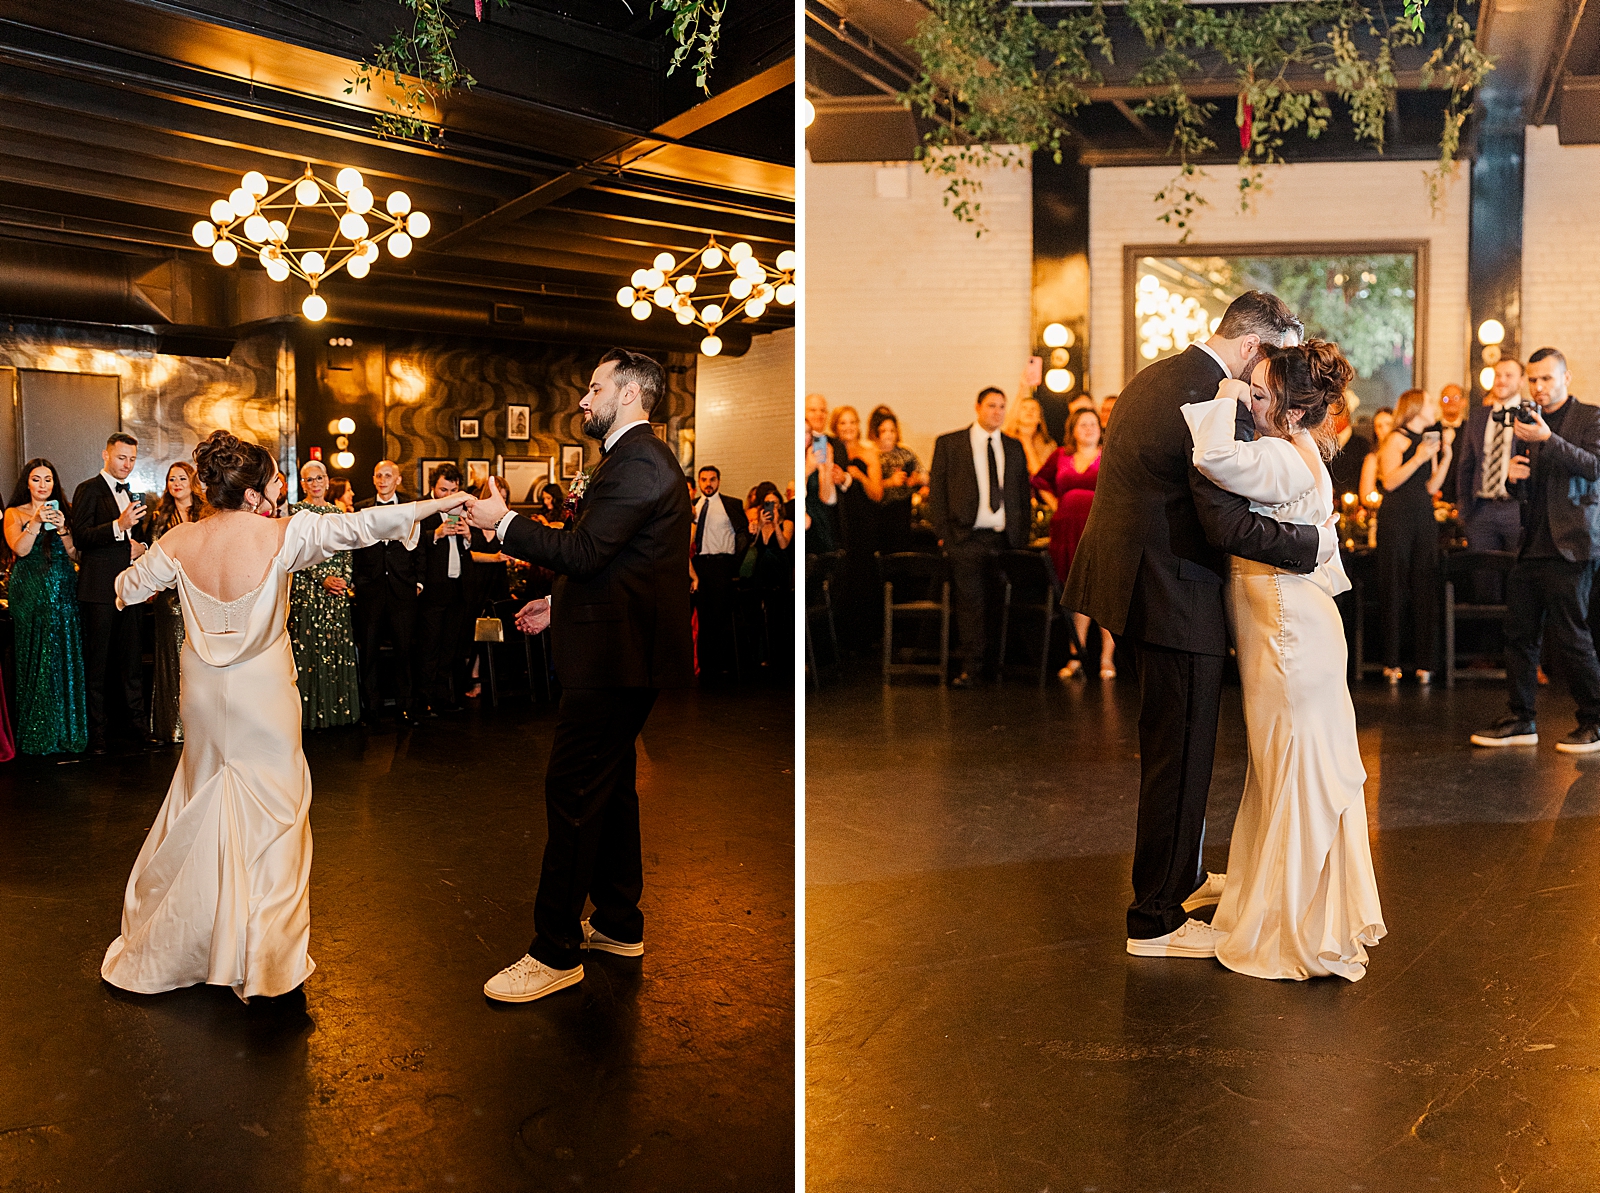 Left photo: Full body shot of the couple enjoying their first dance. 
Right photo: Full body shot of the couple sharing an embrace during their first dance. 